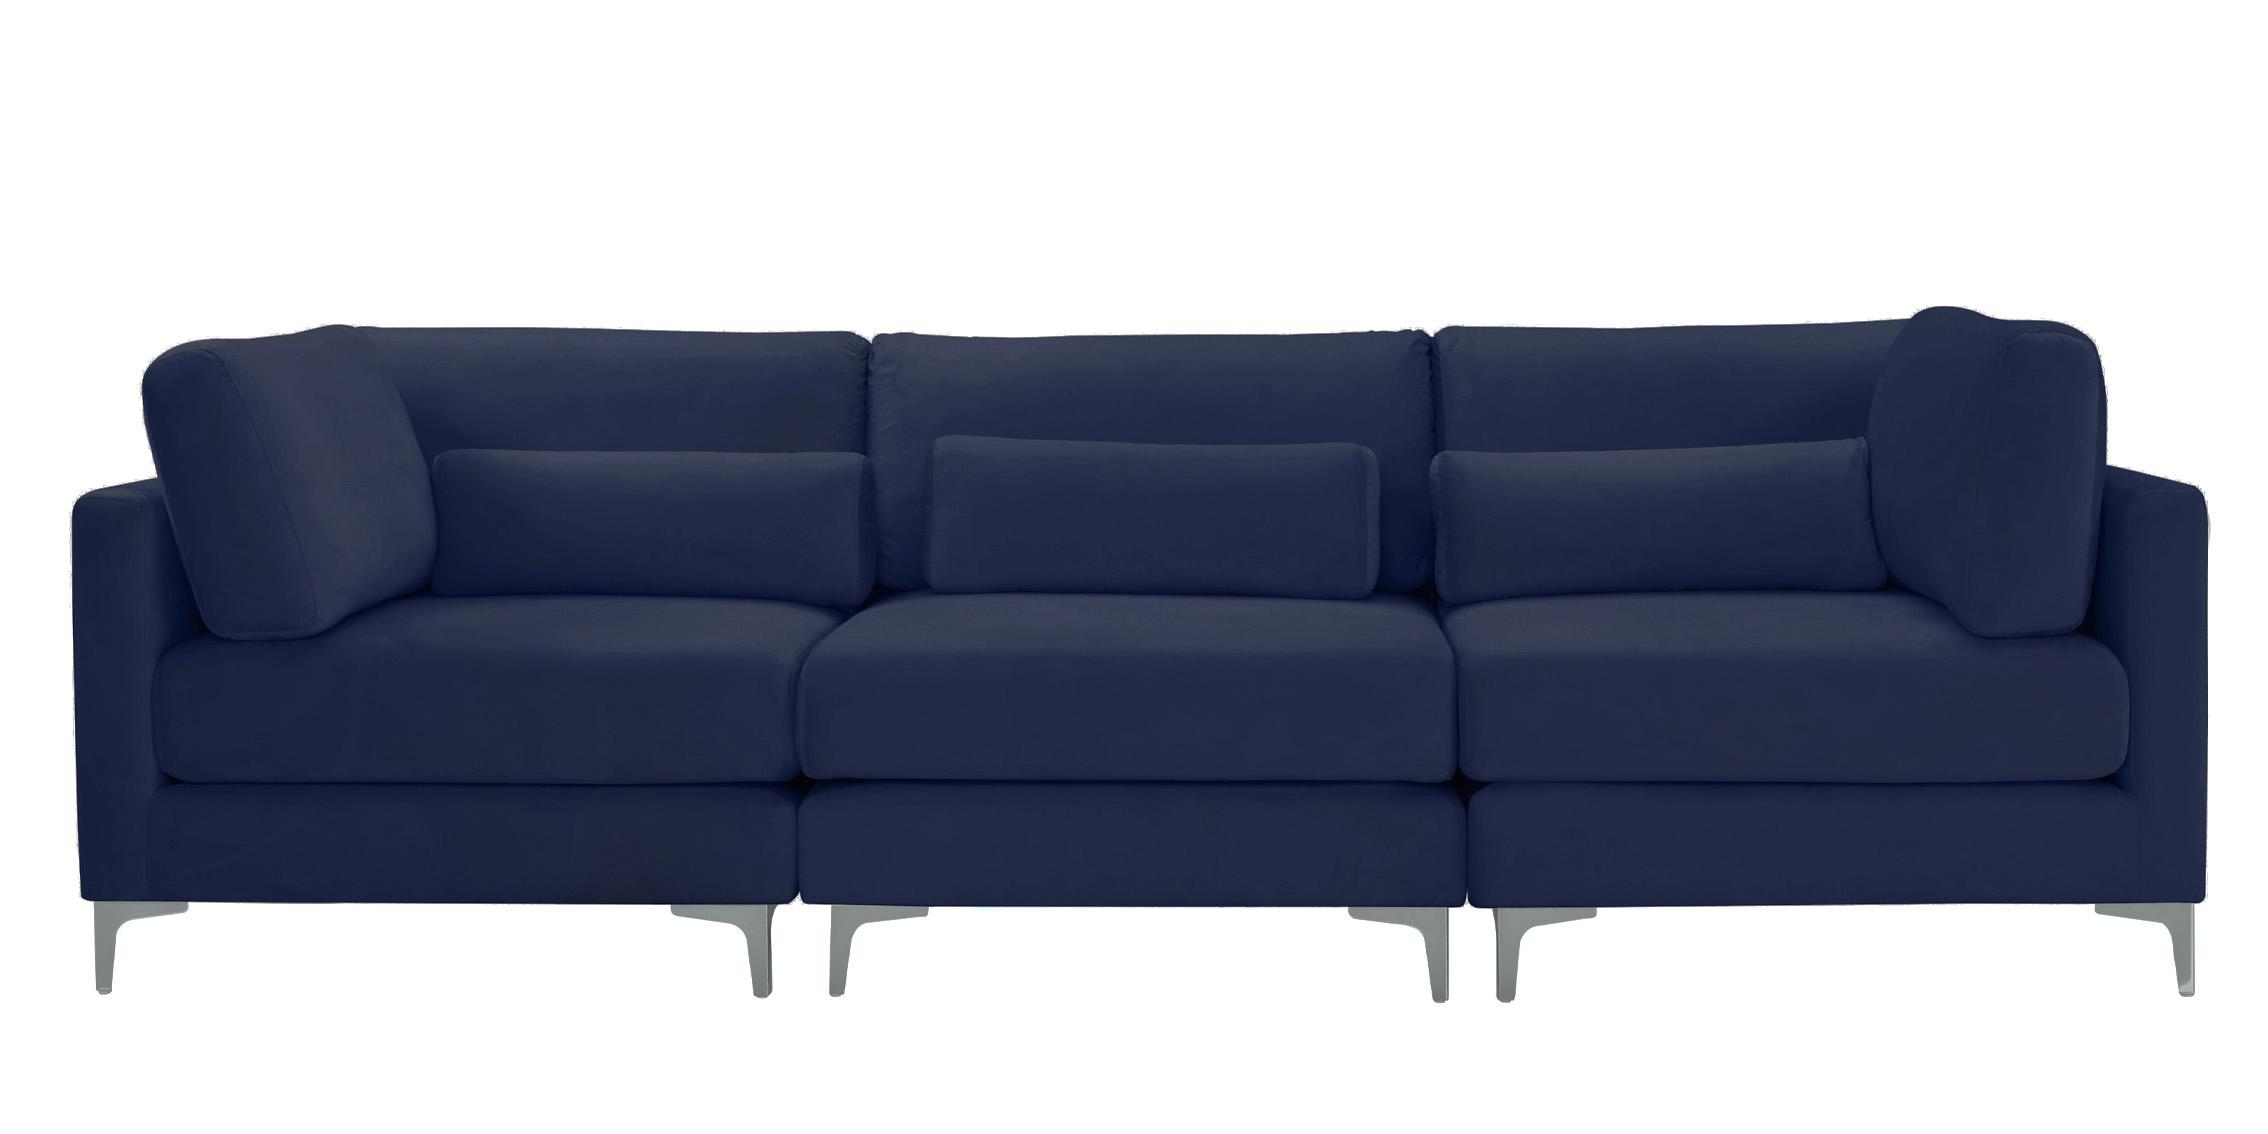 

    
Meridian Furniture JULIA 605Navy-S108 Modular Sectional Sofa Navy 605Navy-S108
